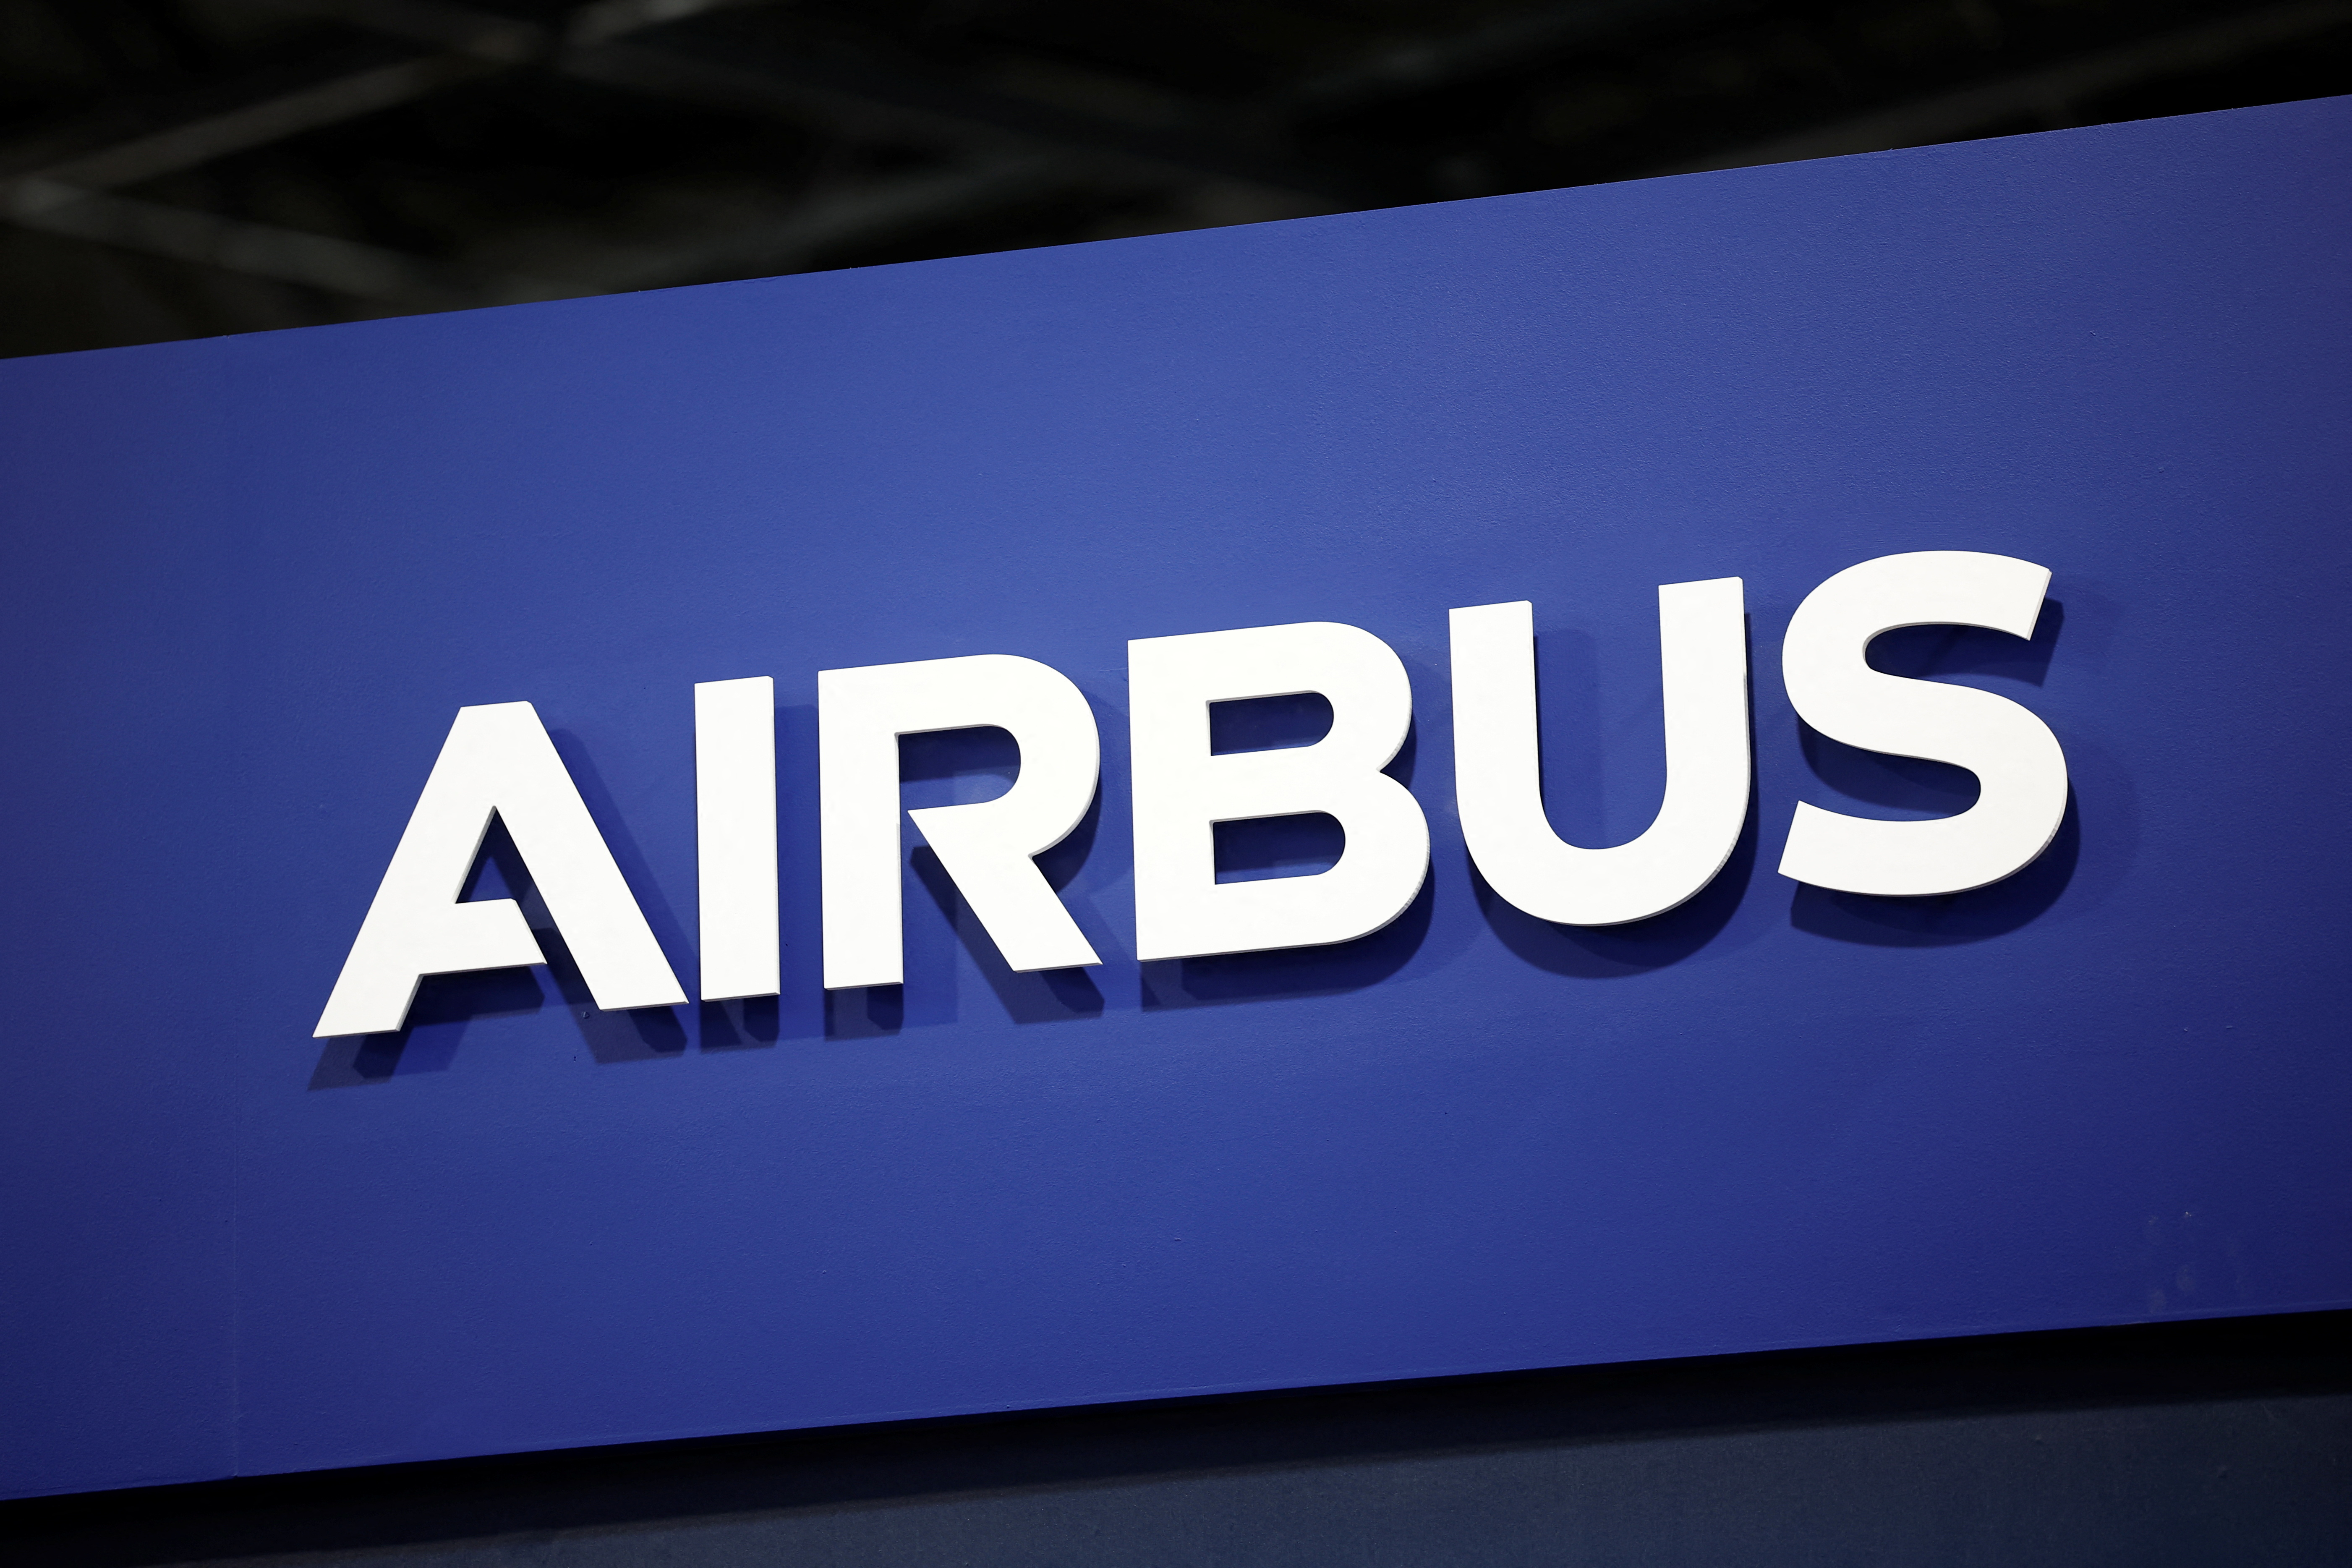 Airbus décroche en Bourse après avoir annoncé des retards de livraison et des prévisions financières en baisse